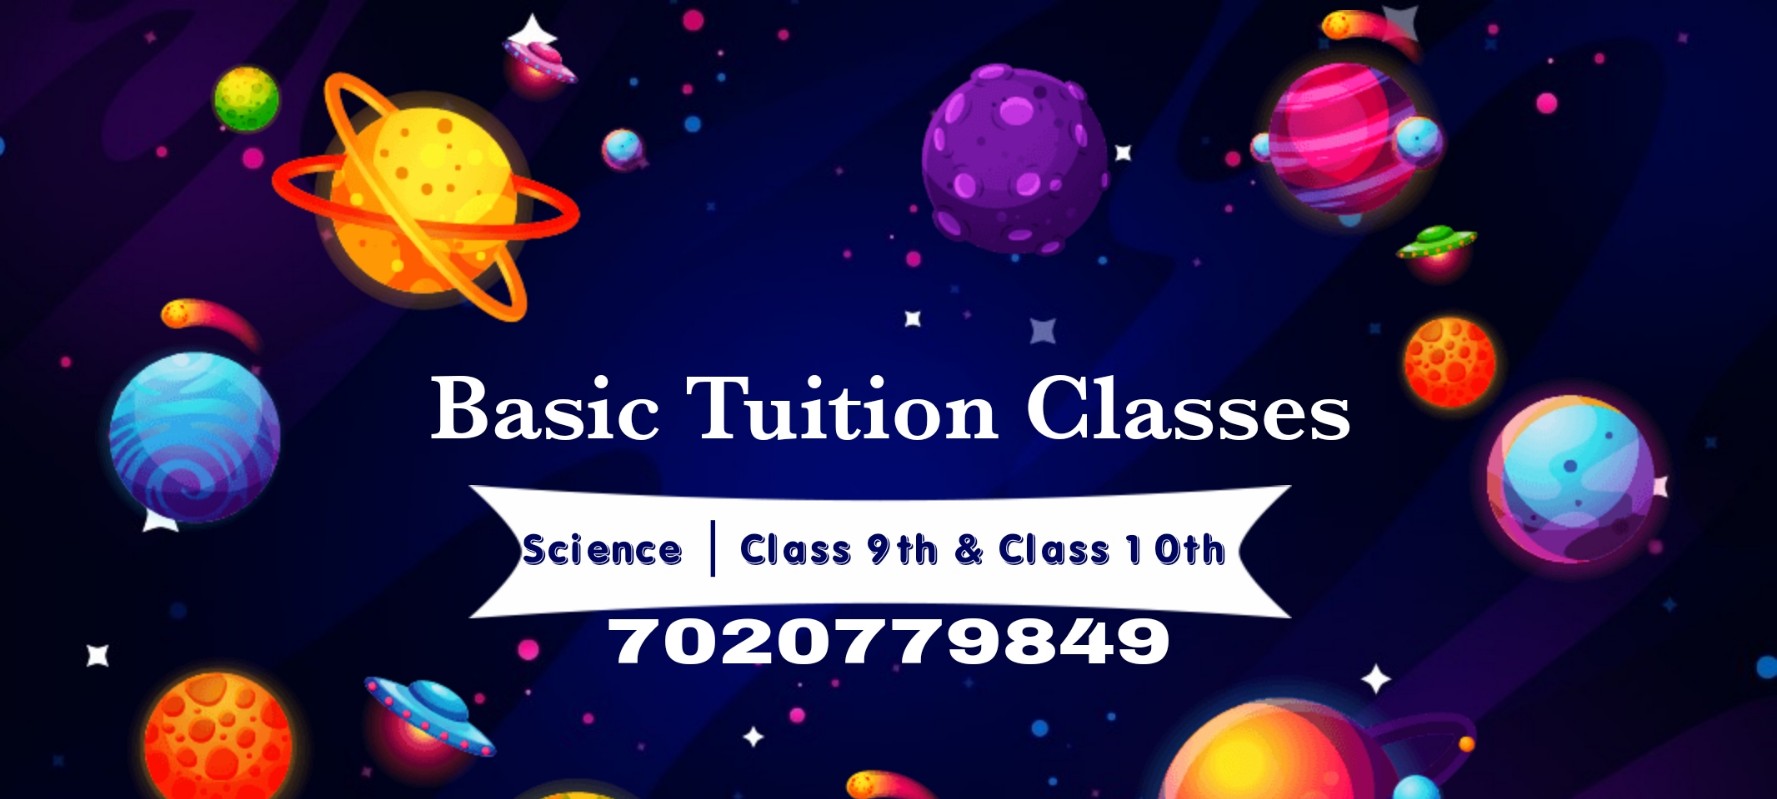 Basic Tuition Classes | Teachmint